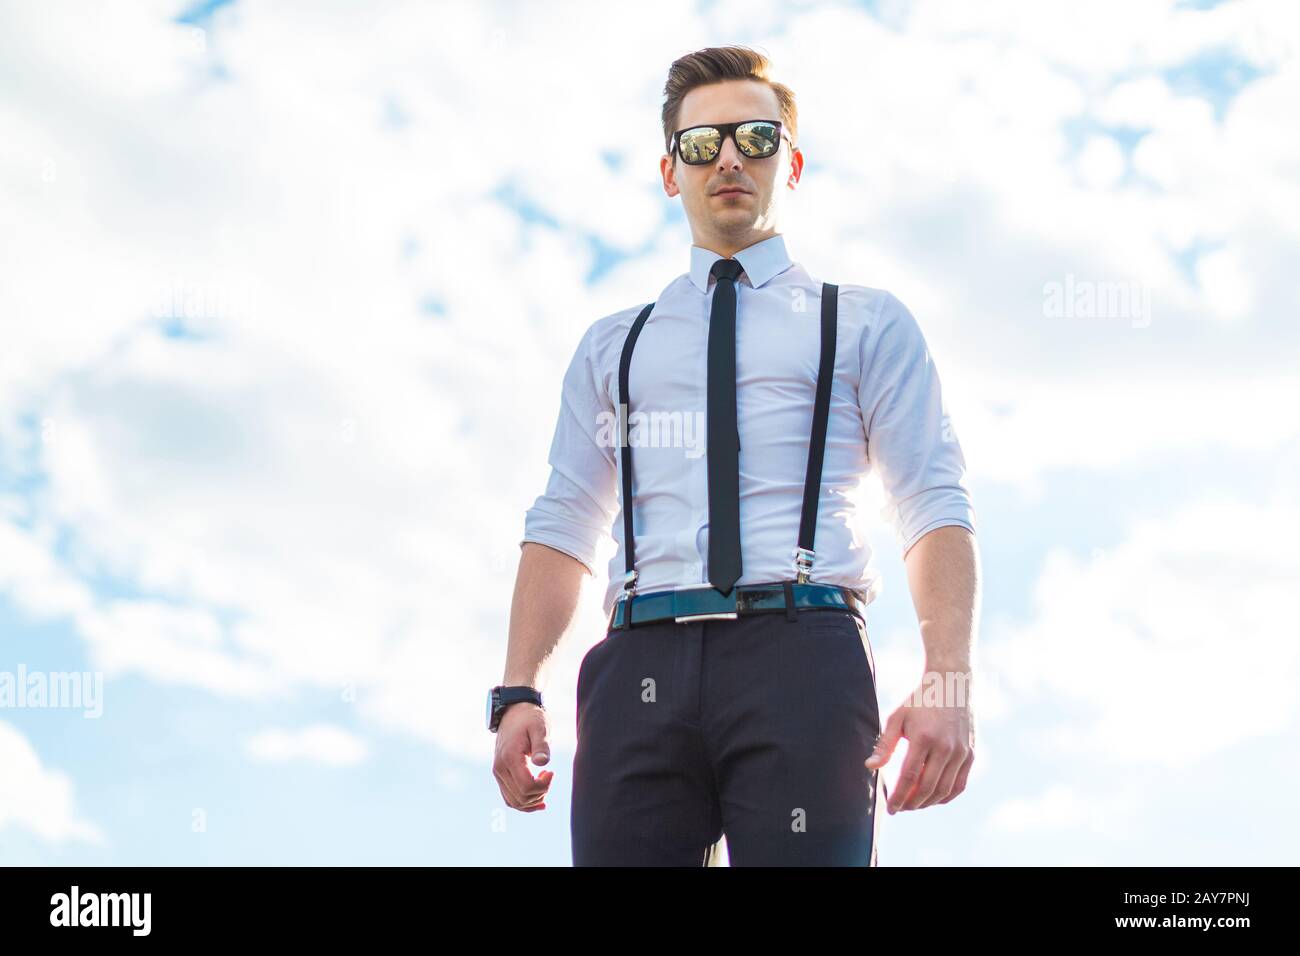 Jeune homme sérieux en chemise blanche, cravate, bretelles et lunettes de soleil Banque D'Images